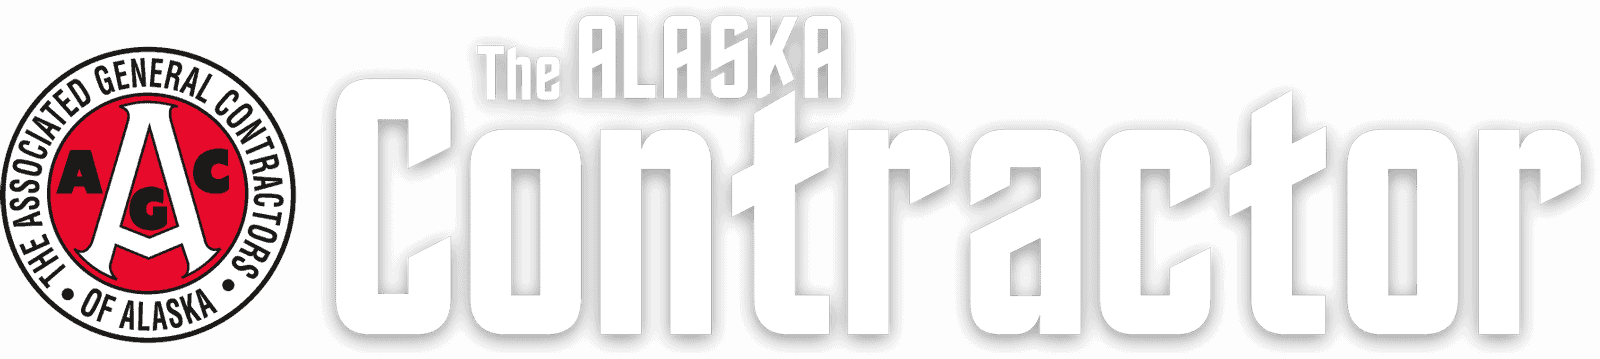 The Alaska Contractor logo